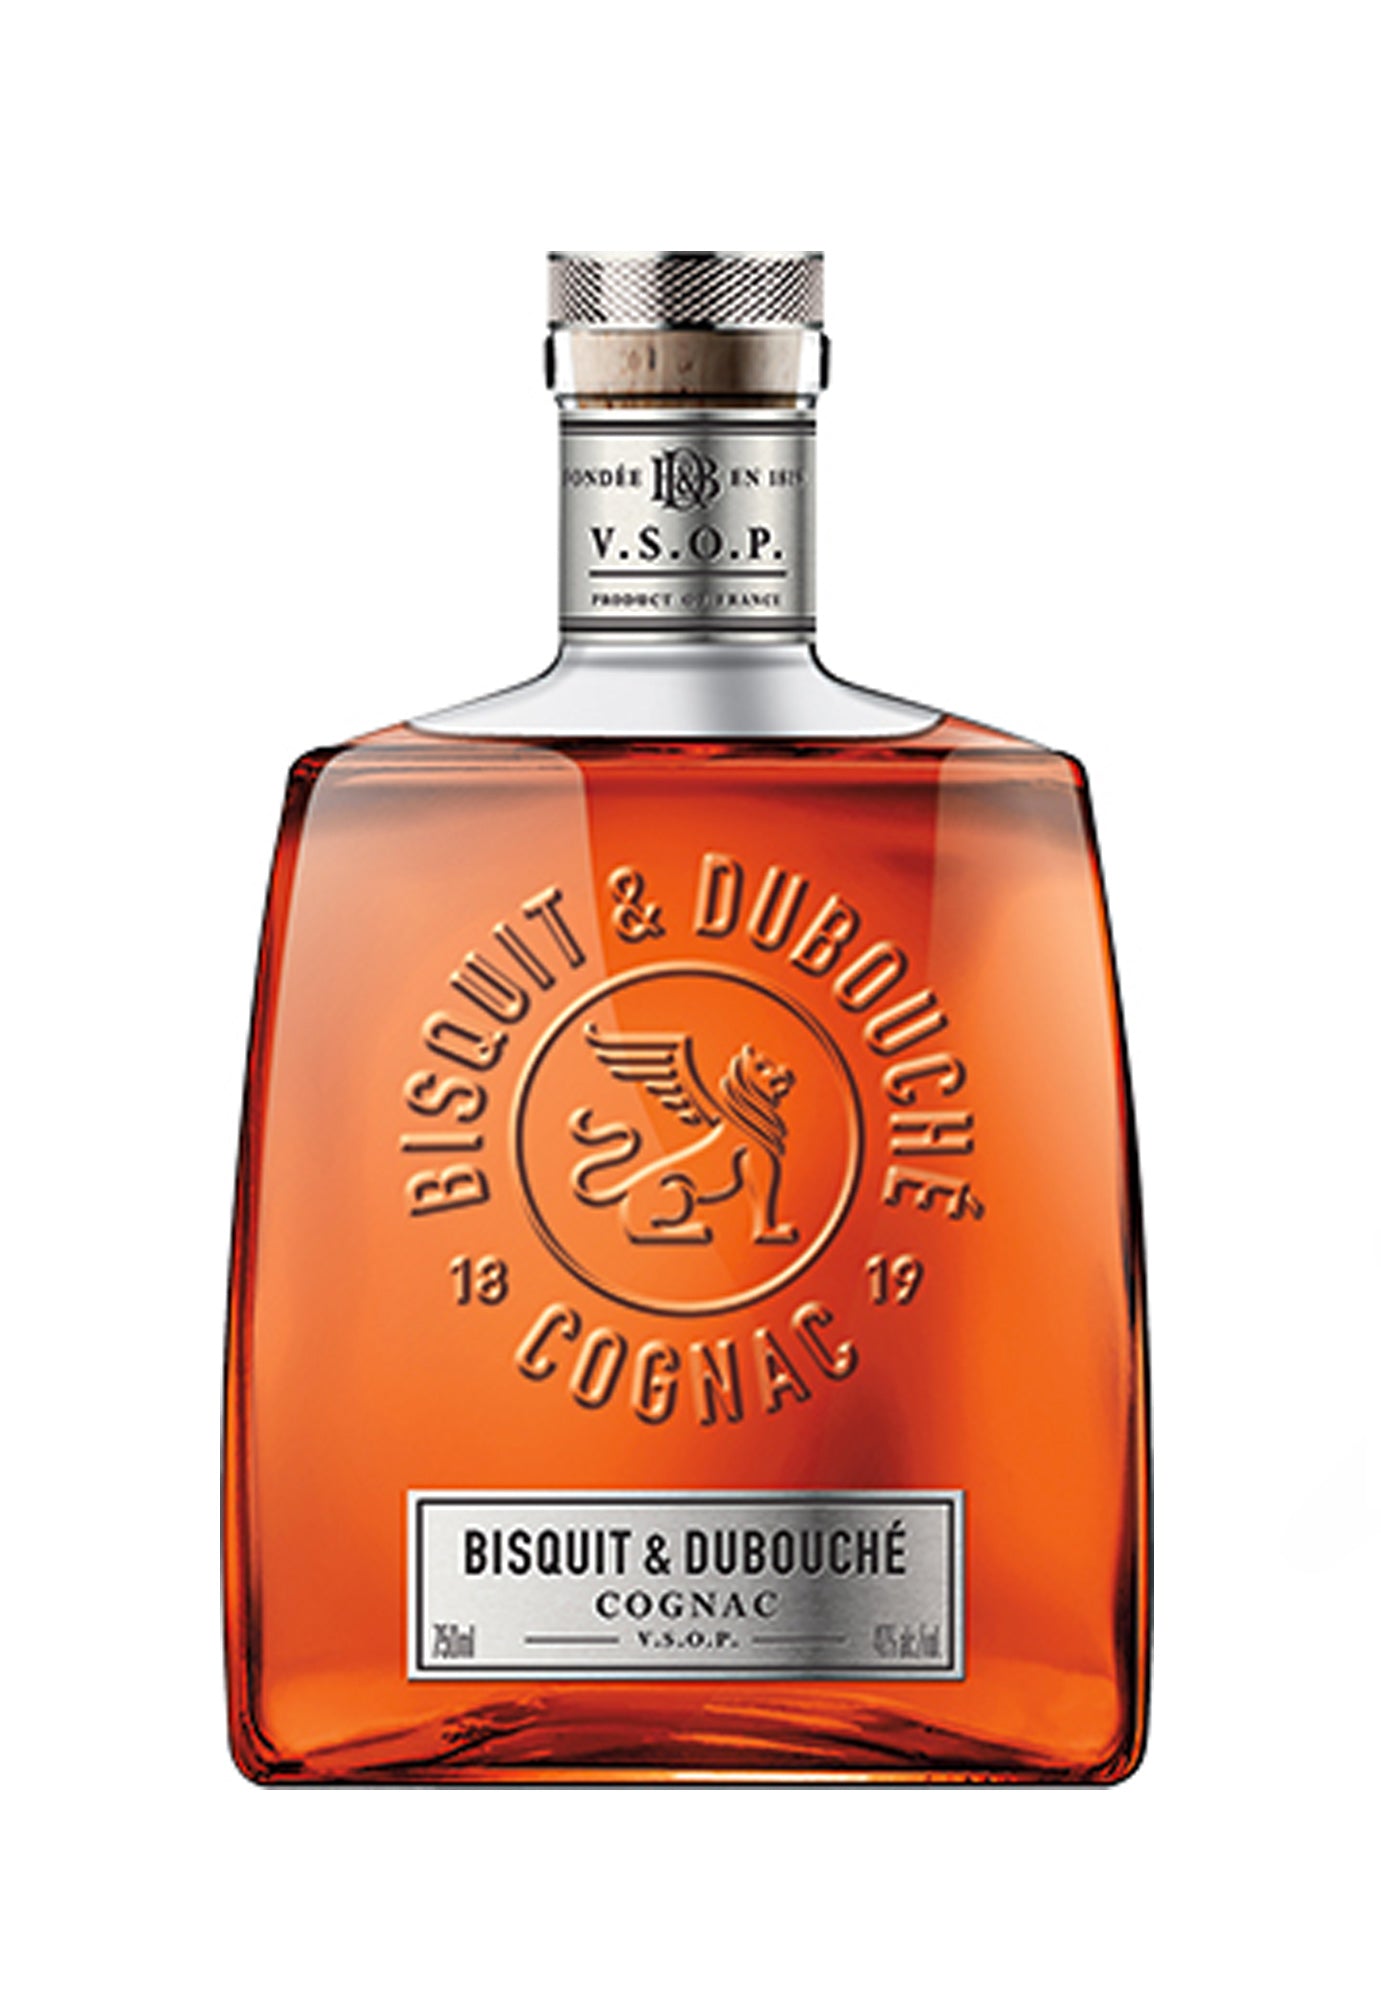 Bisquit & Dubouche VSOP Cognac